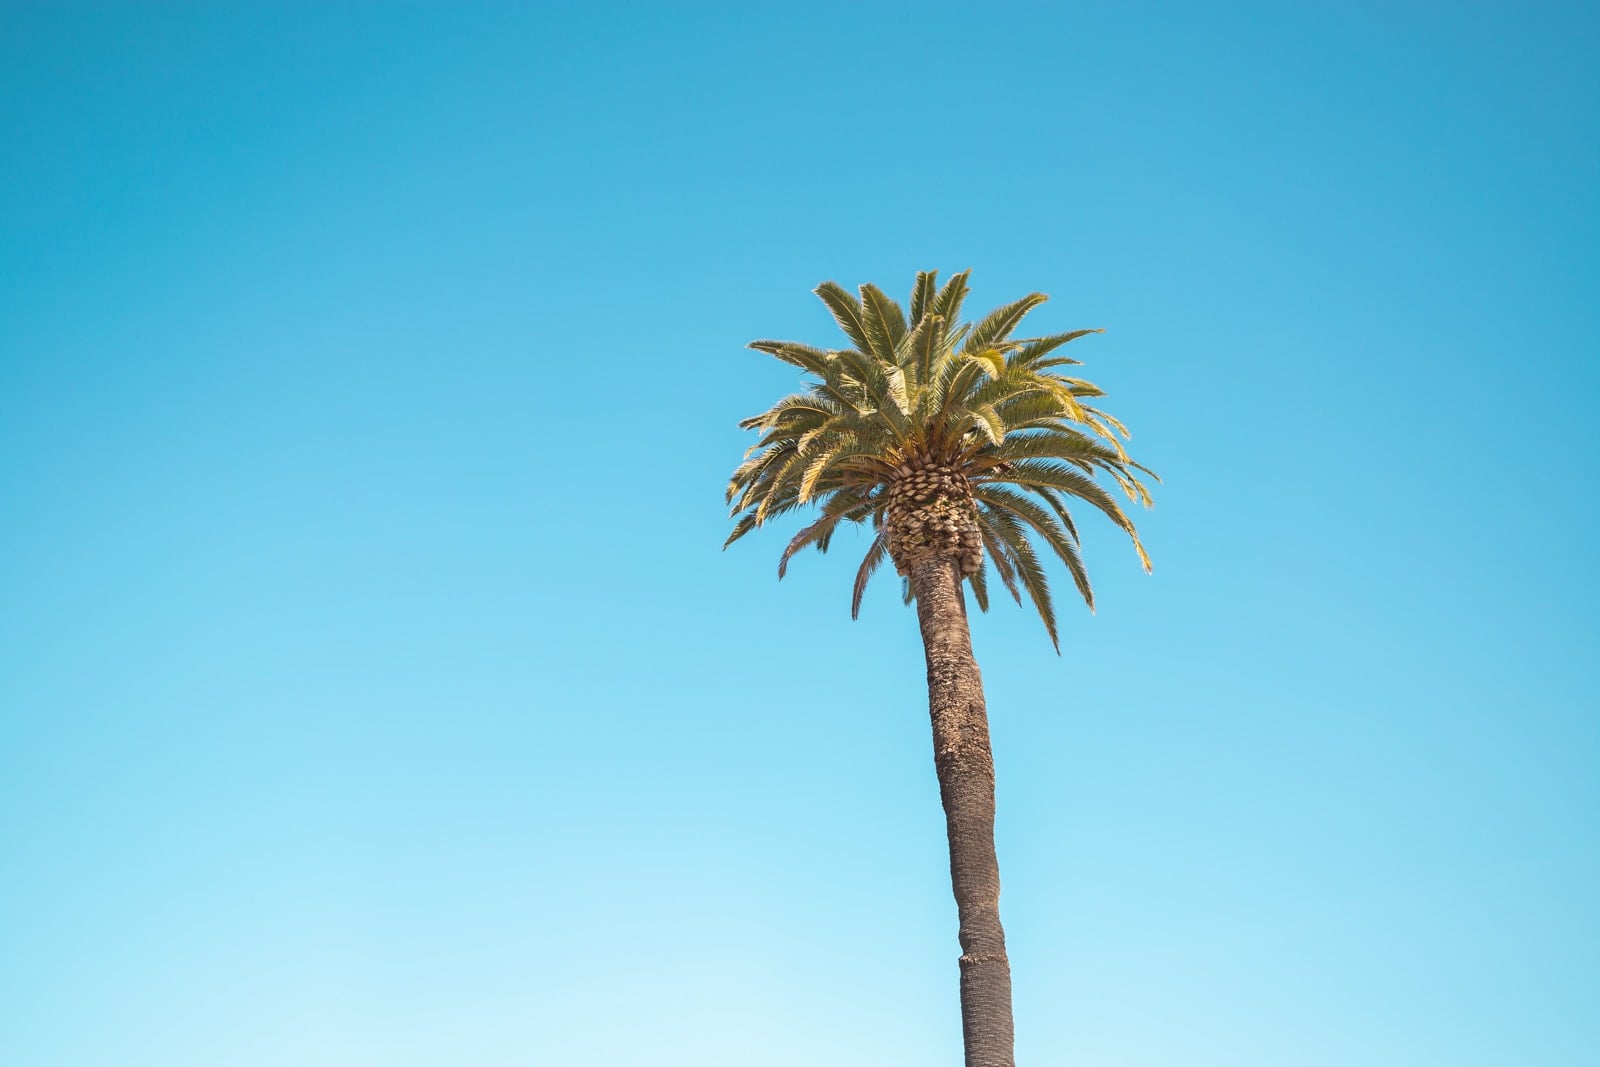 A palm tree at Ocean Beach